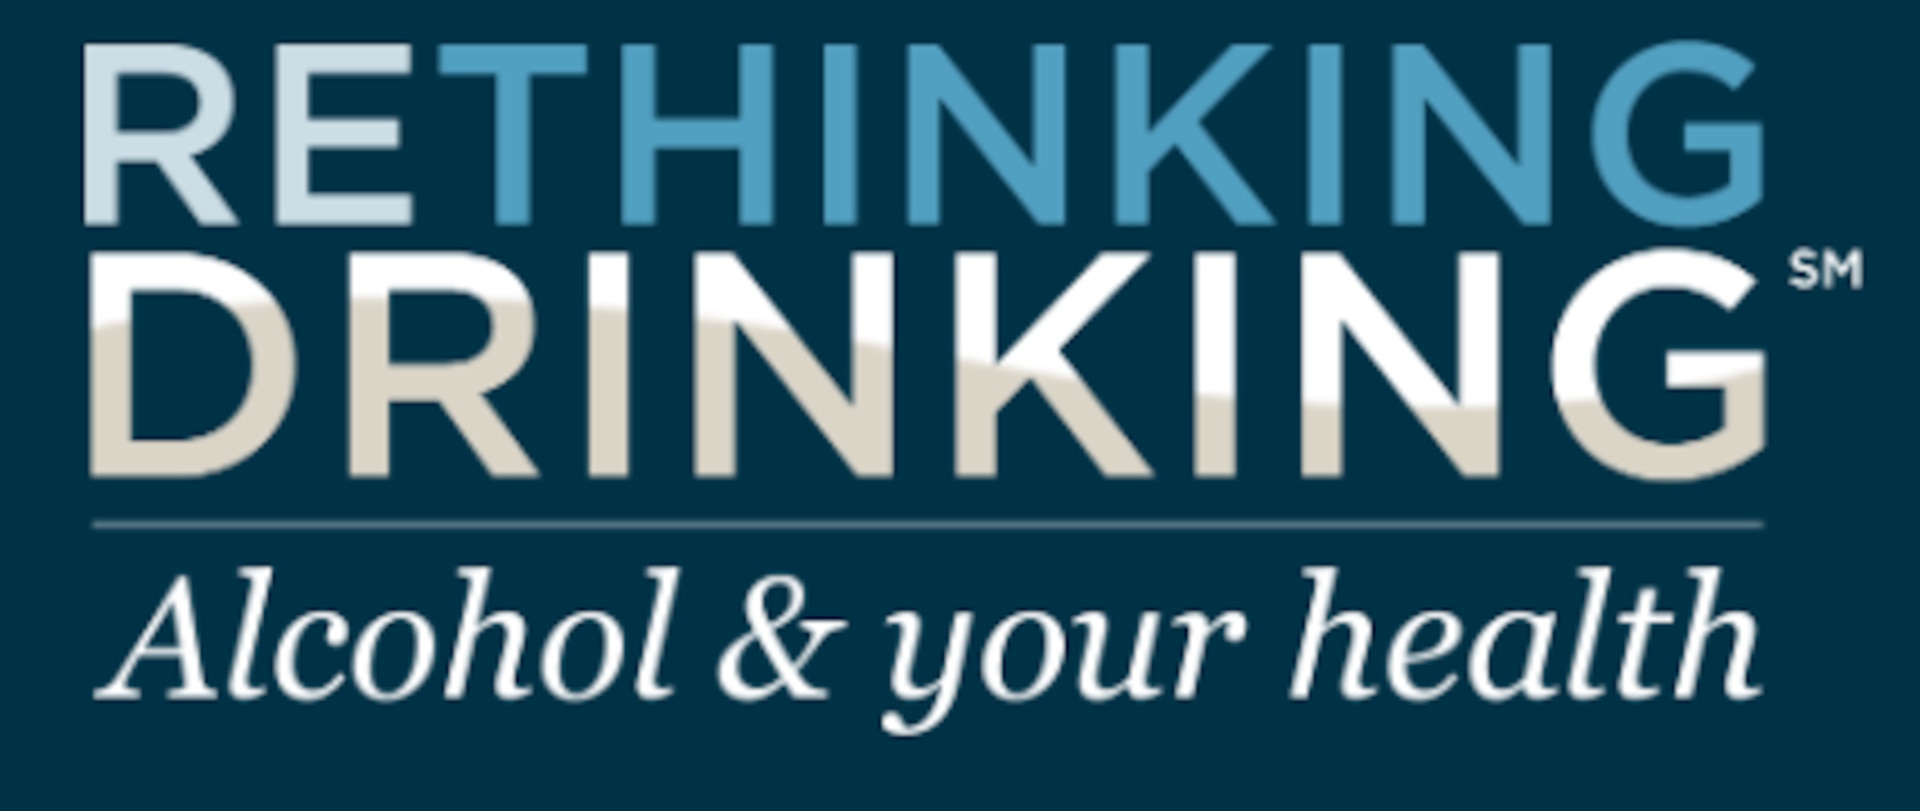 Rethinking Drinking logo